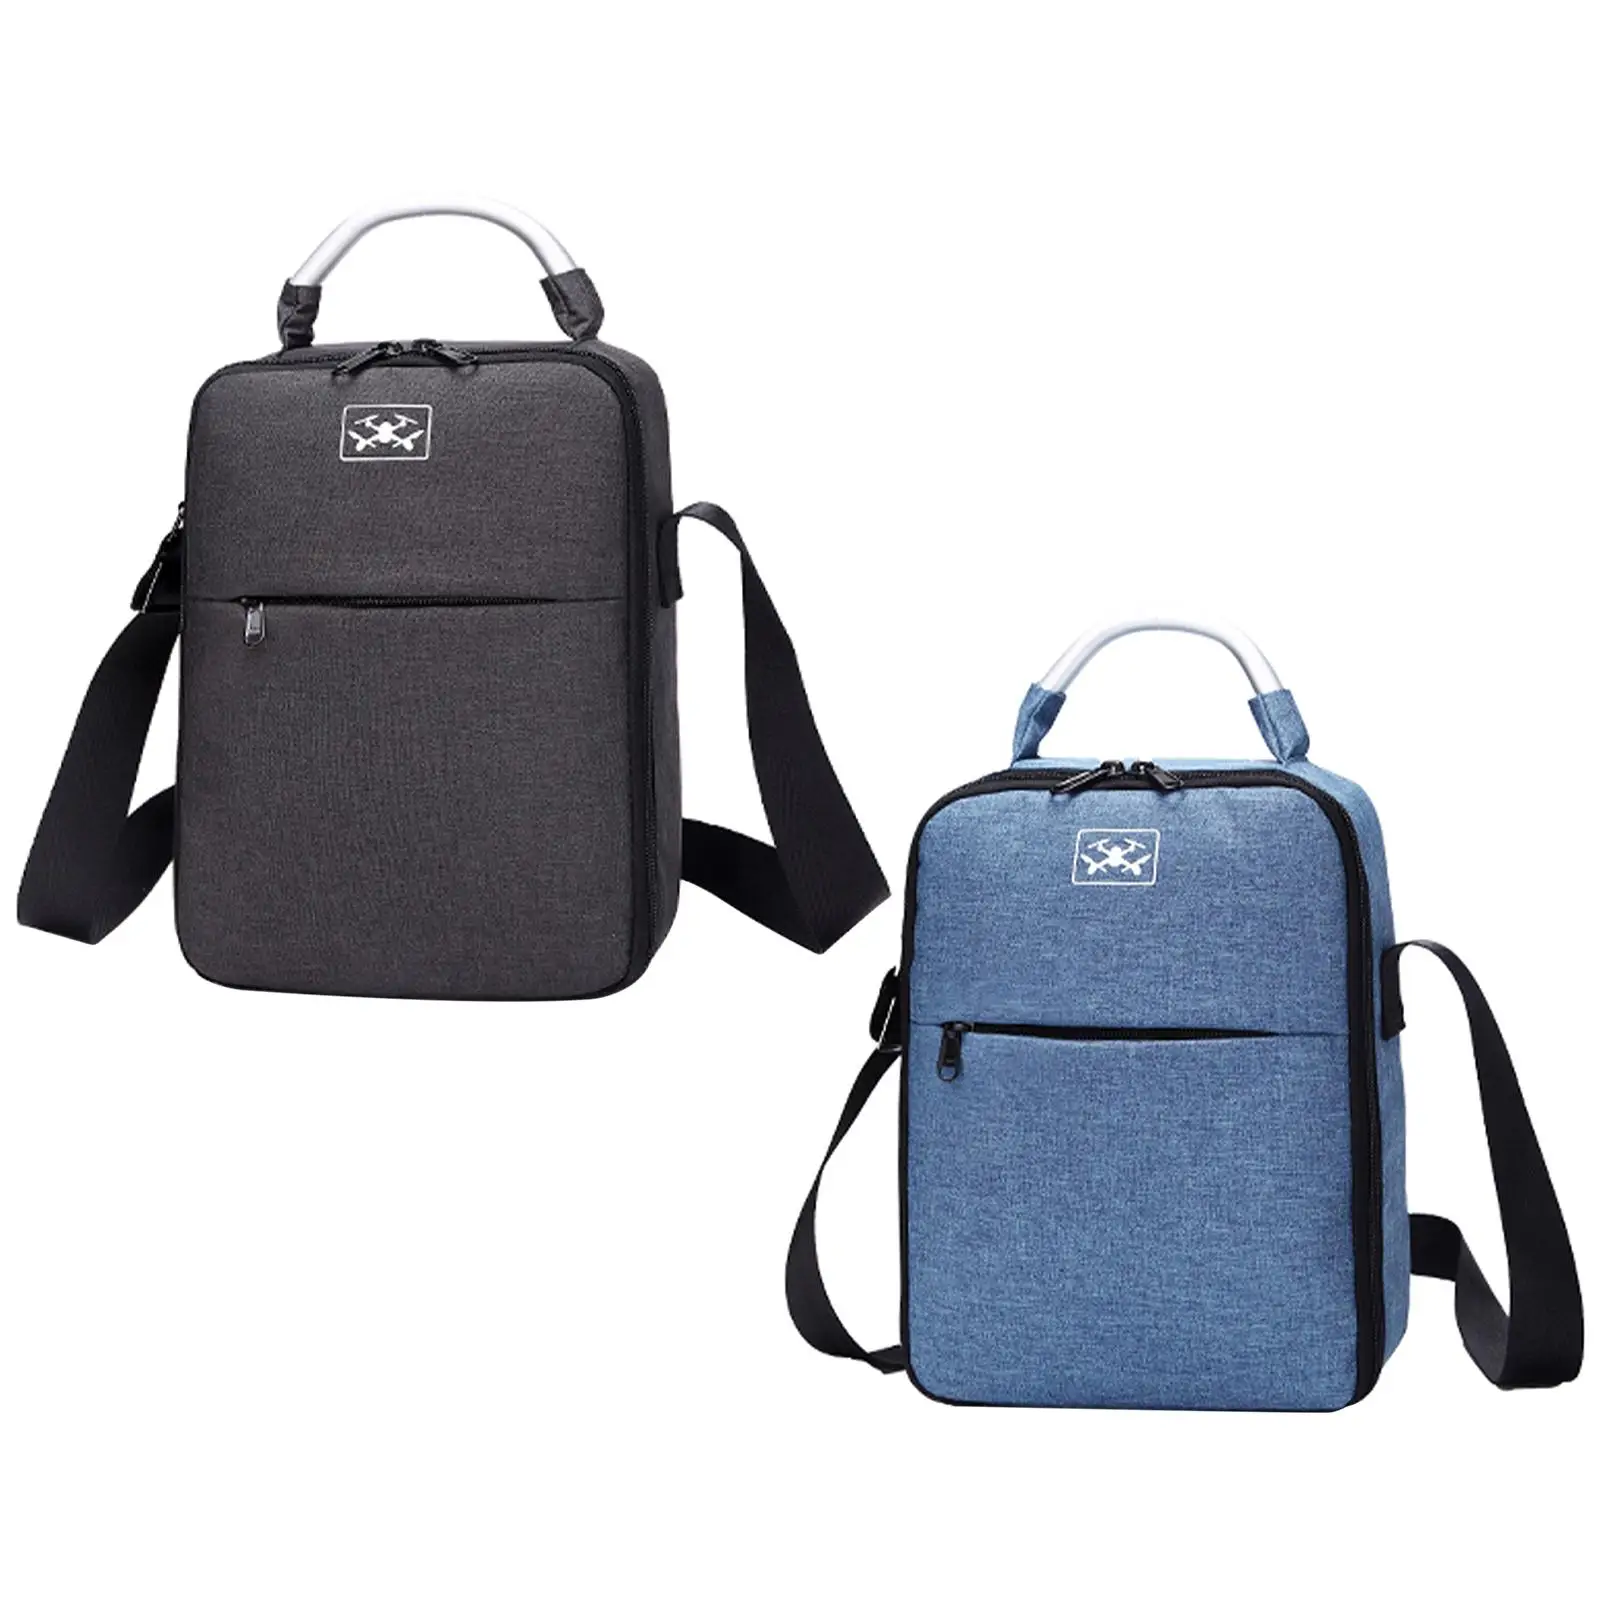 Portable Carrying Case Bag Large Handbag Protection Bag Wear Resistant Shoulder Bag for DJI Mini 3 Pro Remote Controller Work